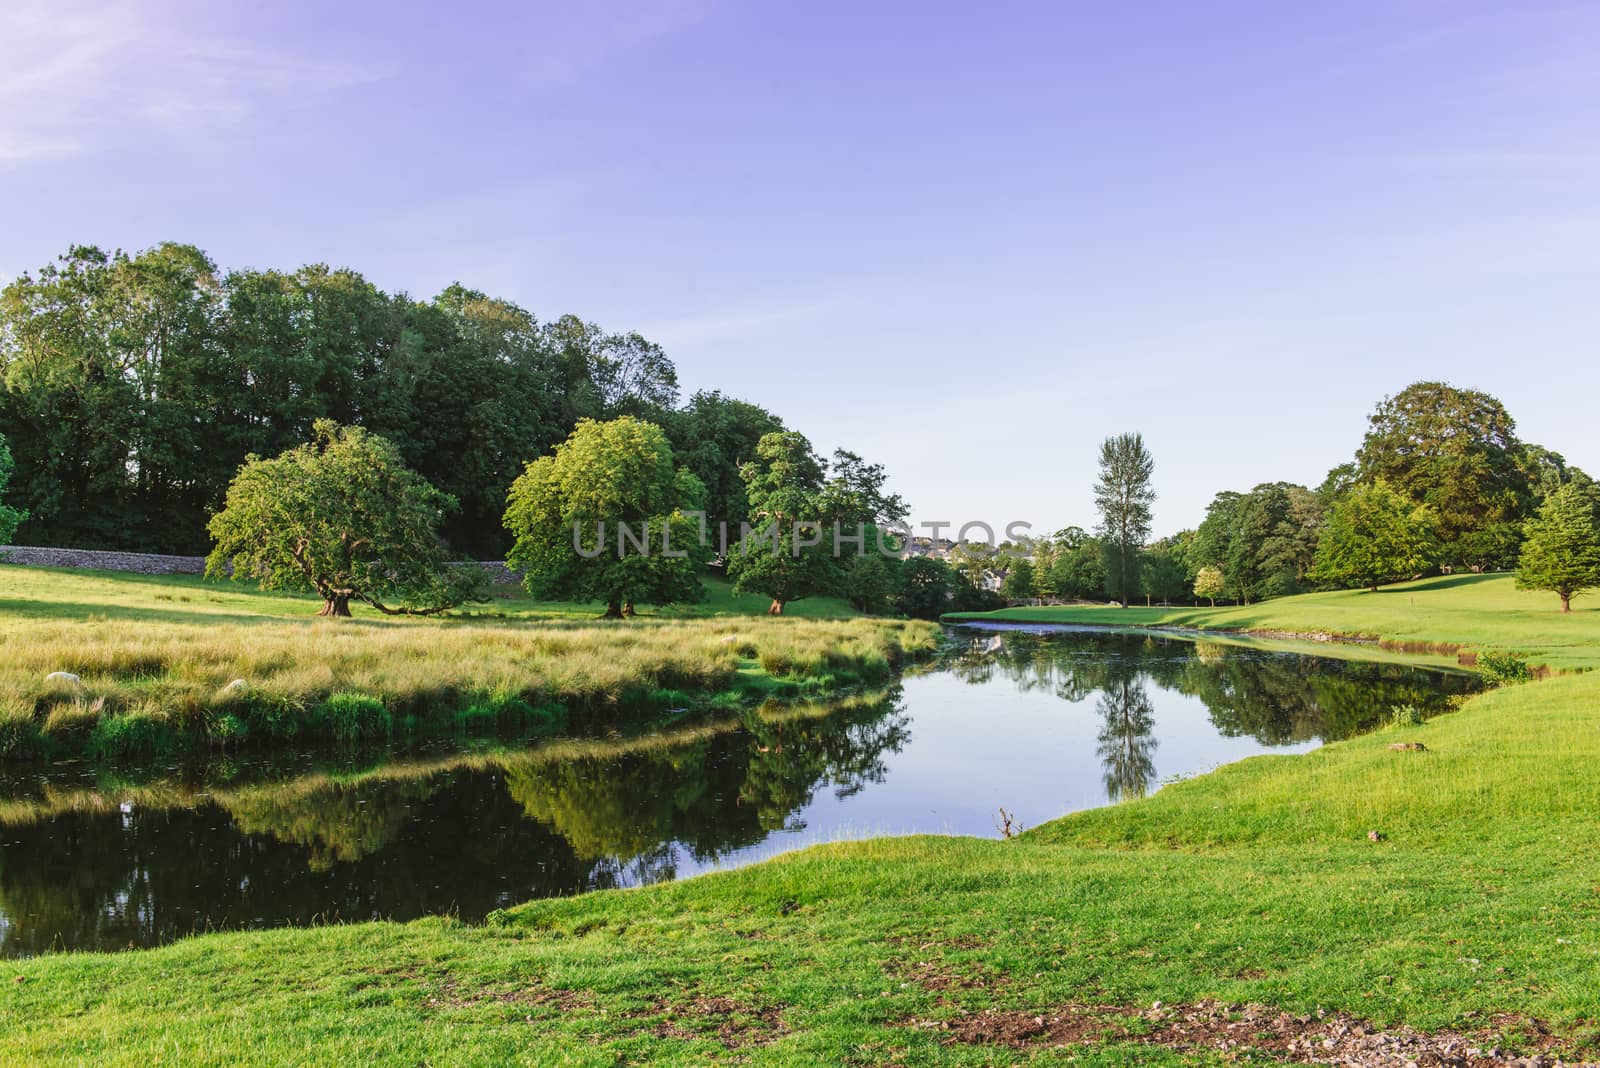 a bend in the River Bela at Dallam Park, Milnthorpe, Cumbria, UK